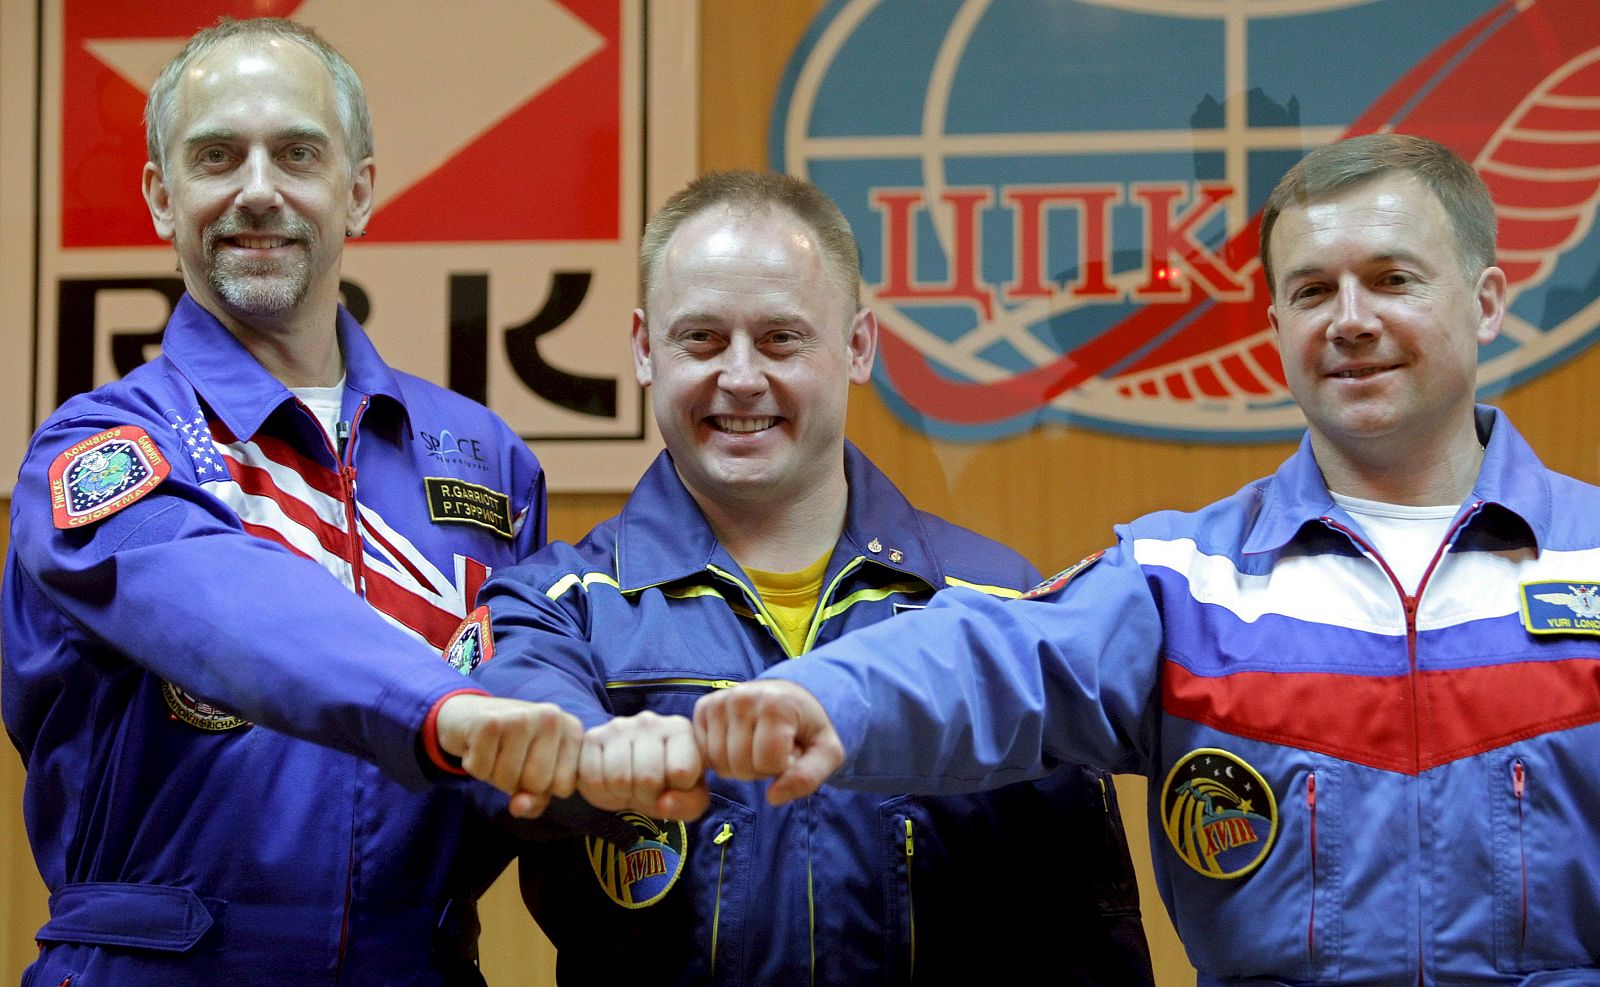 Richard Garriott, a la derecha, junto al comandante ruso Yuriy Lonchakov y el astronauta estadounidense Michael Fincke.